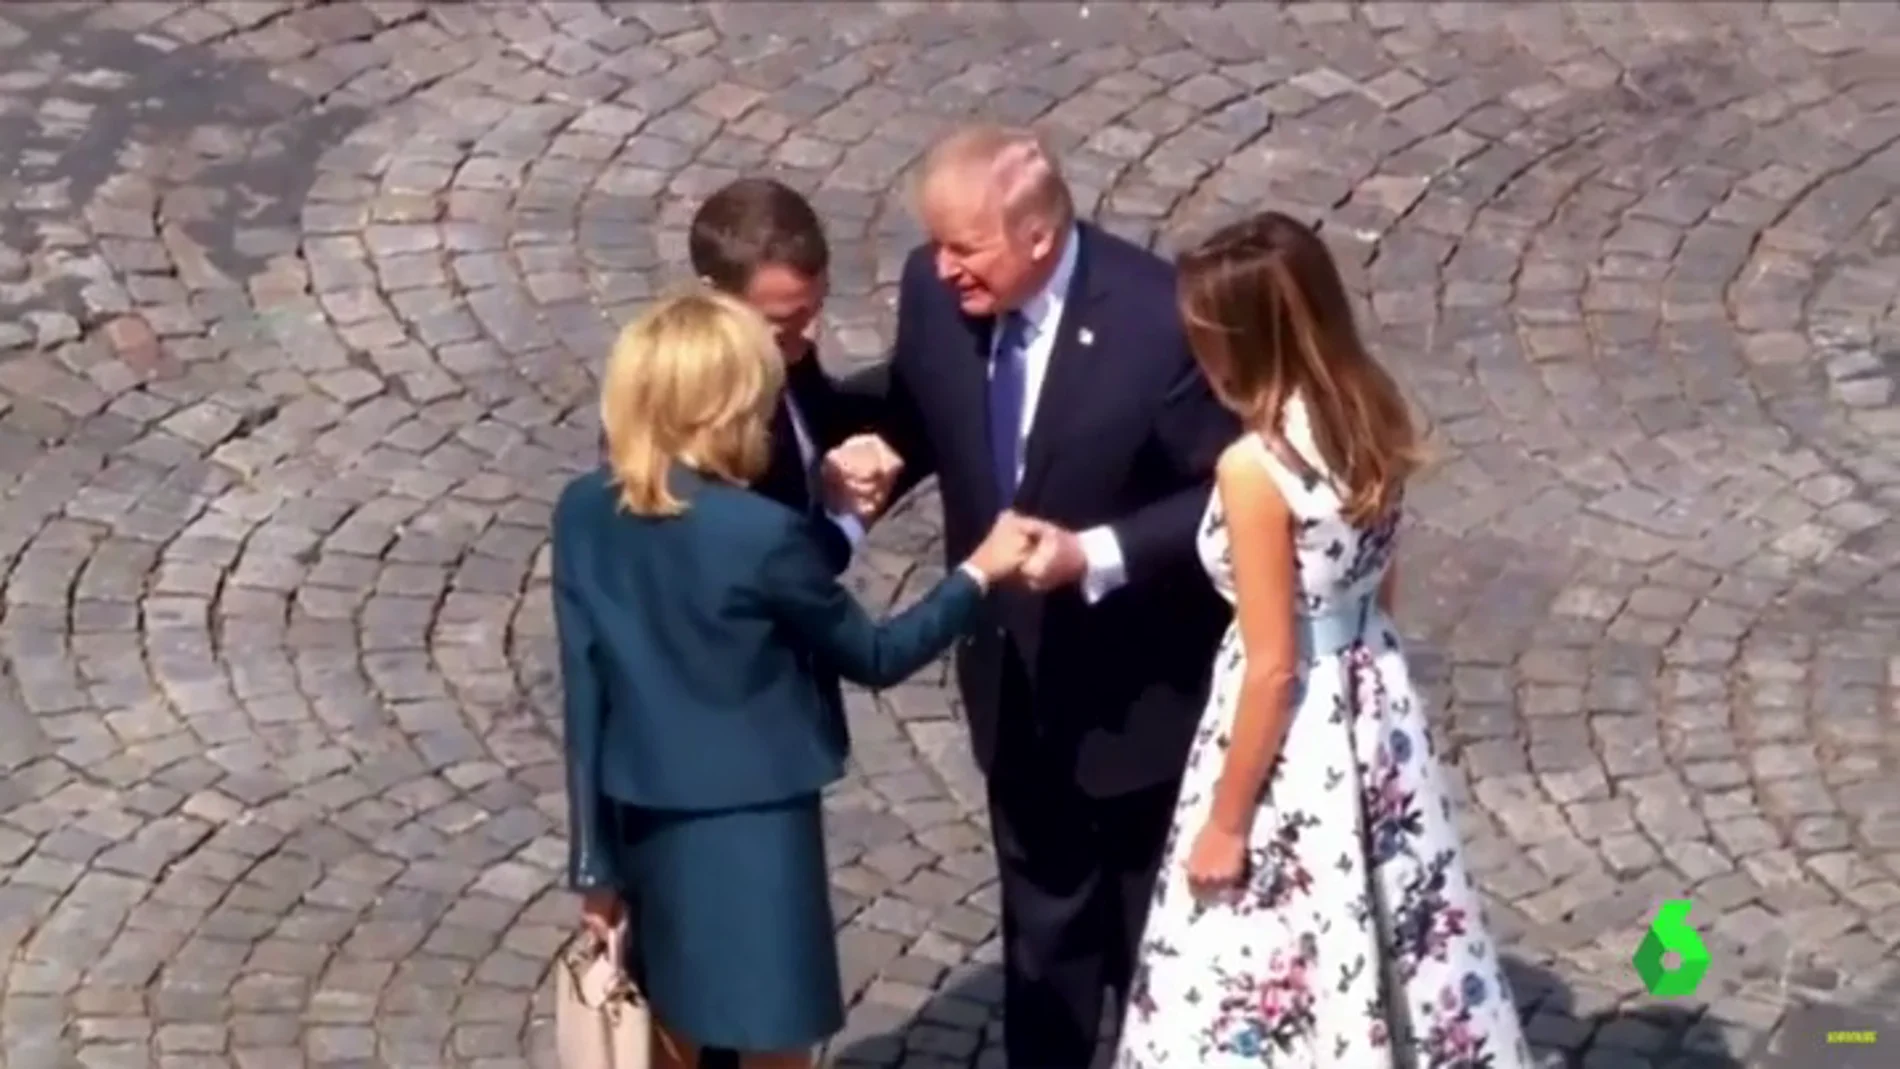 Desfile militar al ritmo de 'Get Lucky' y apretón de manos de 28 segundos, así ha intentado Macron convertirse en el  'amigo europeo' de Trump